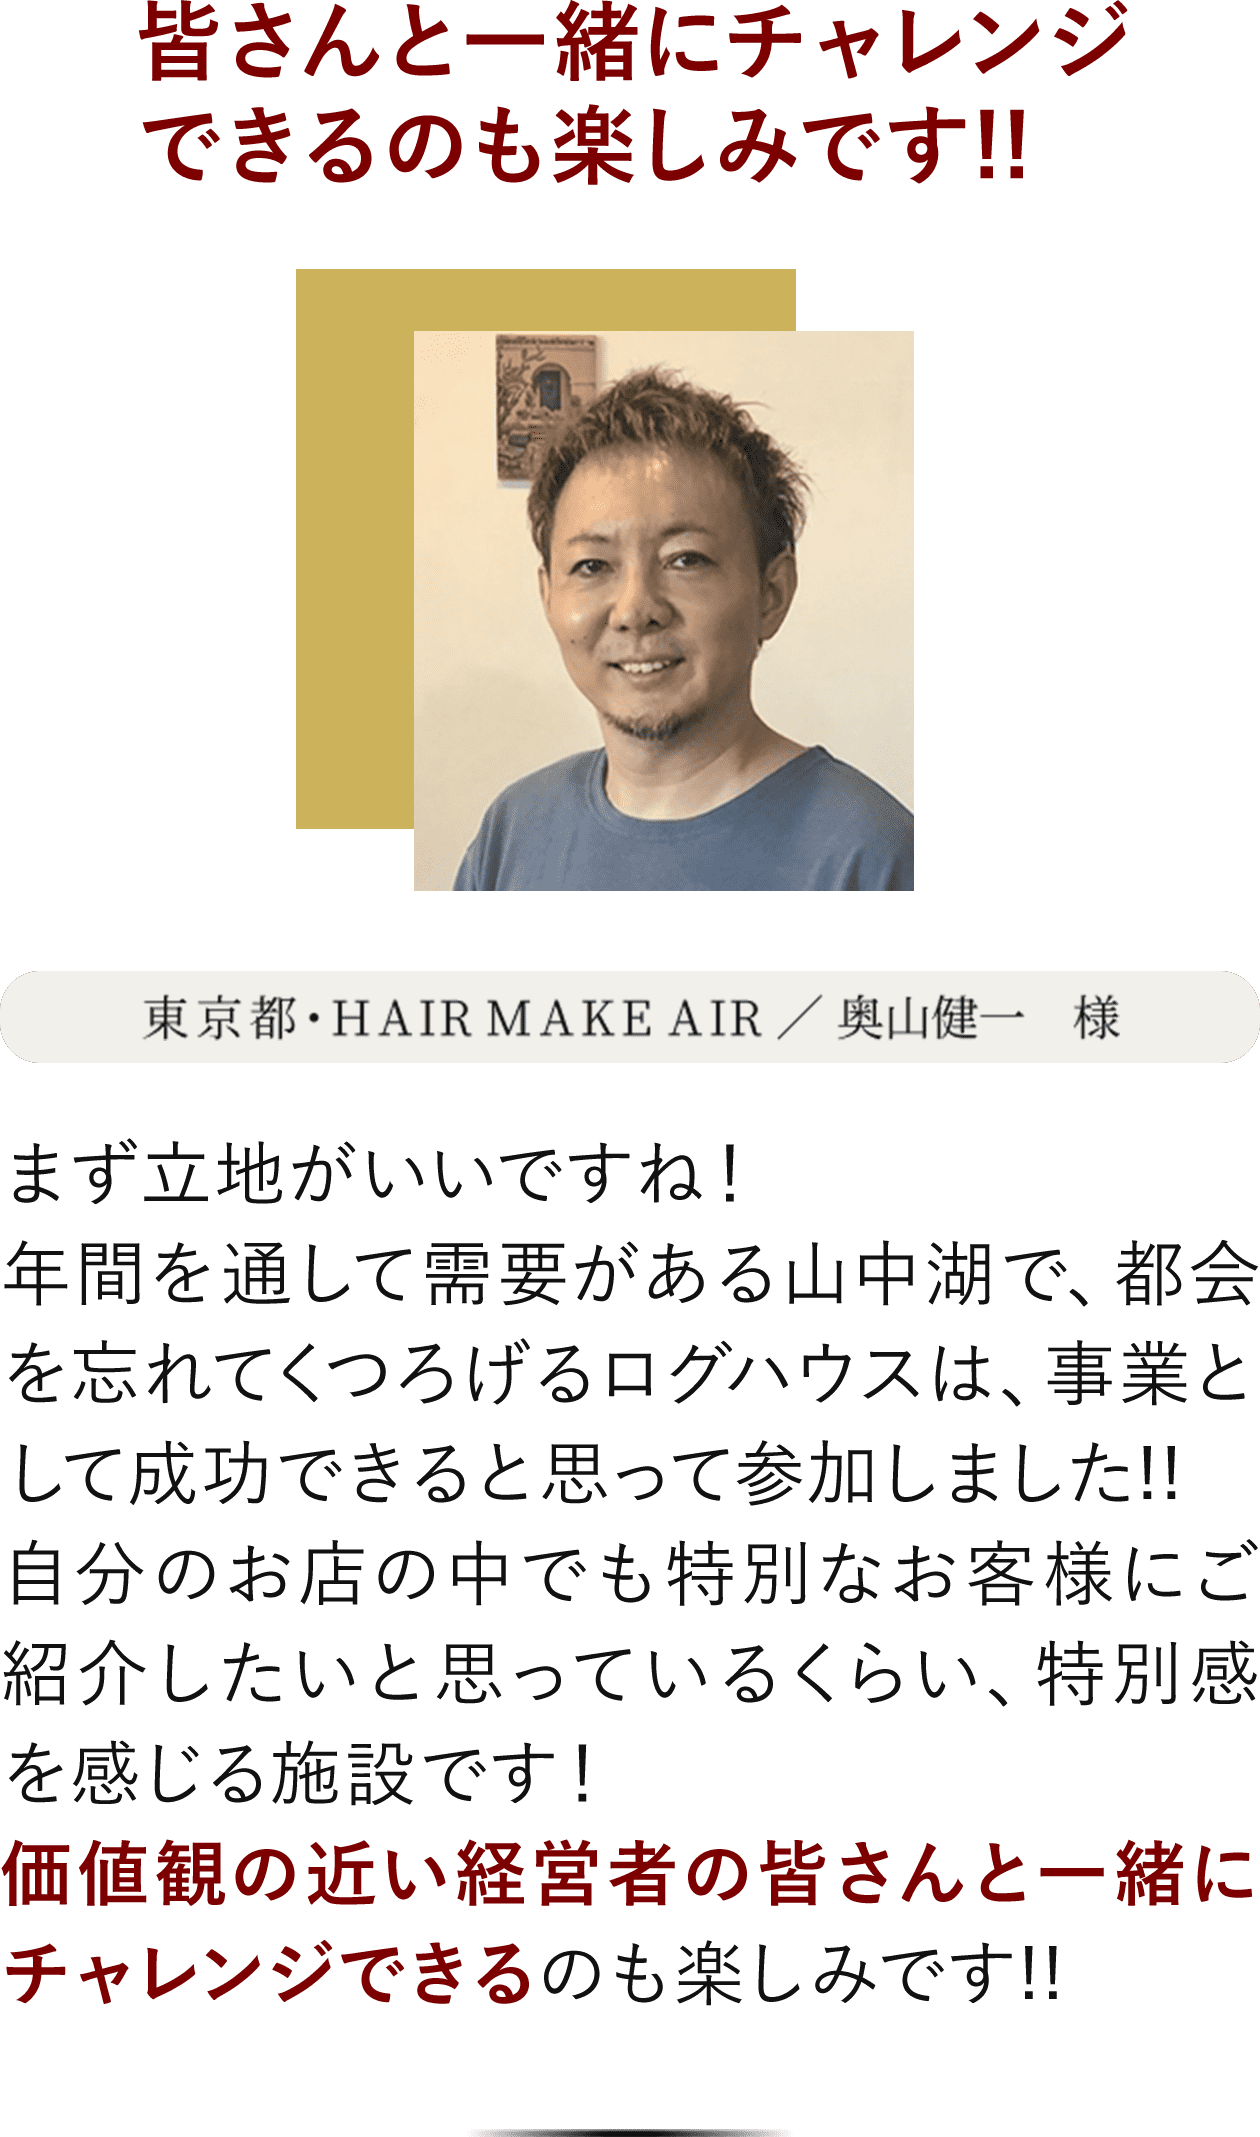 東京都・HAIR MAKE AIR、奥山健一様のインタビュー